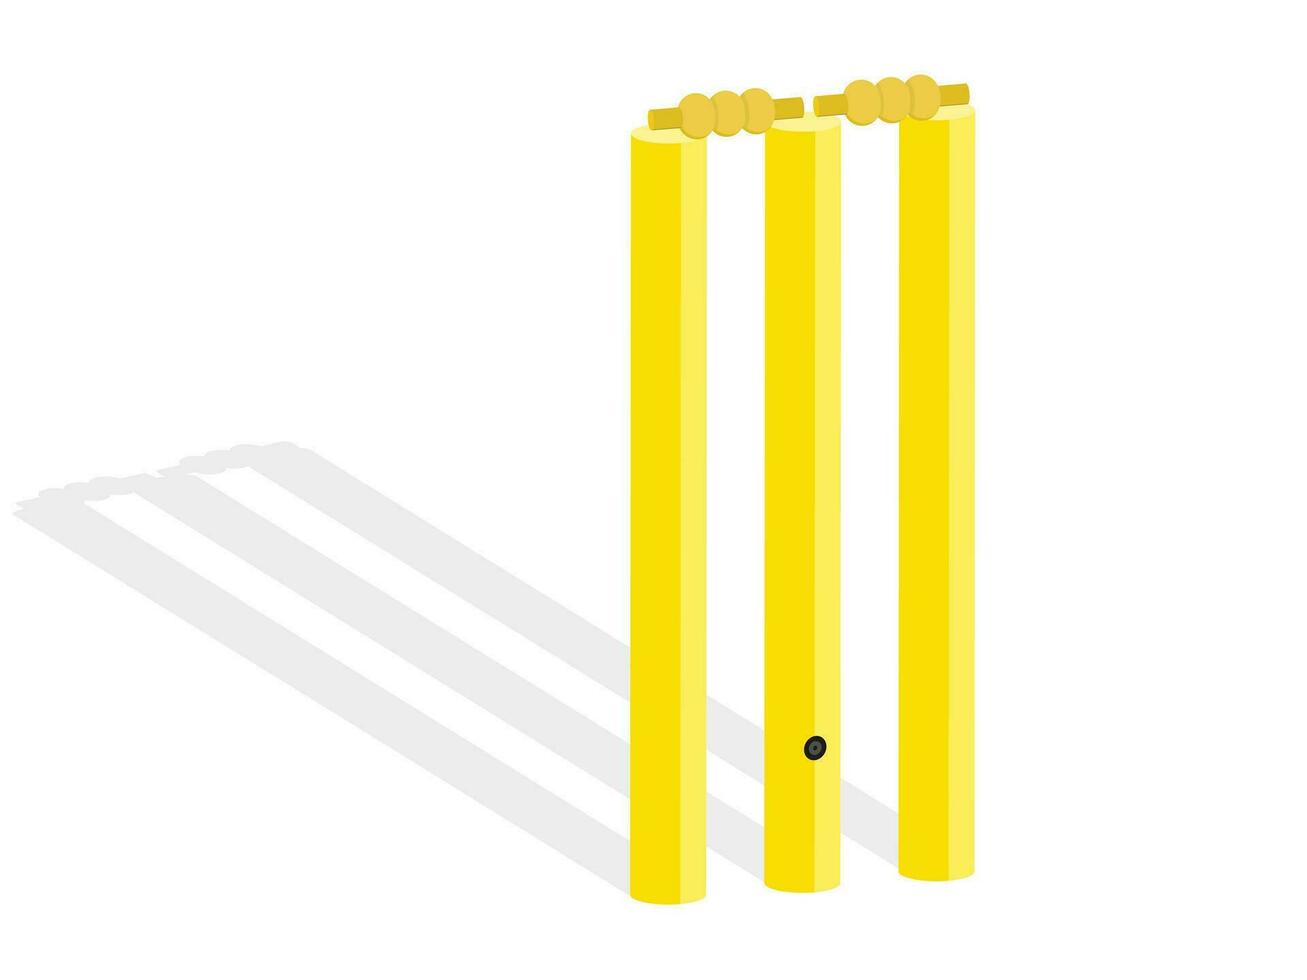 Cricket Wicket Vector